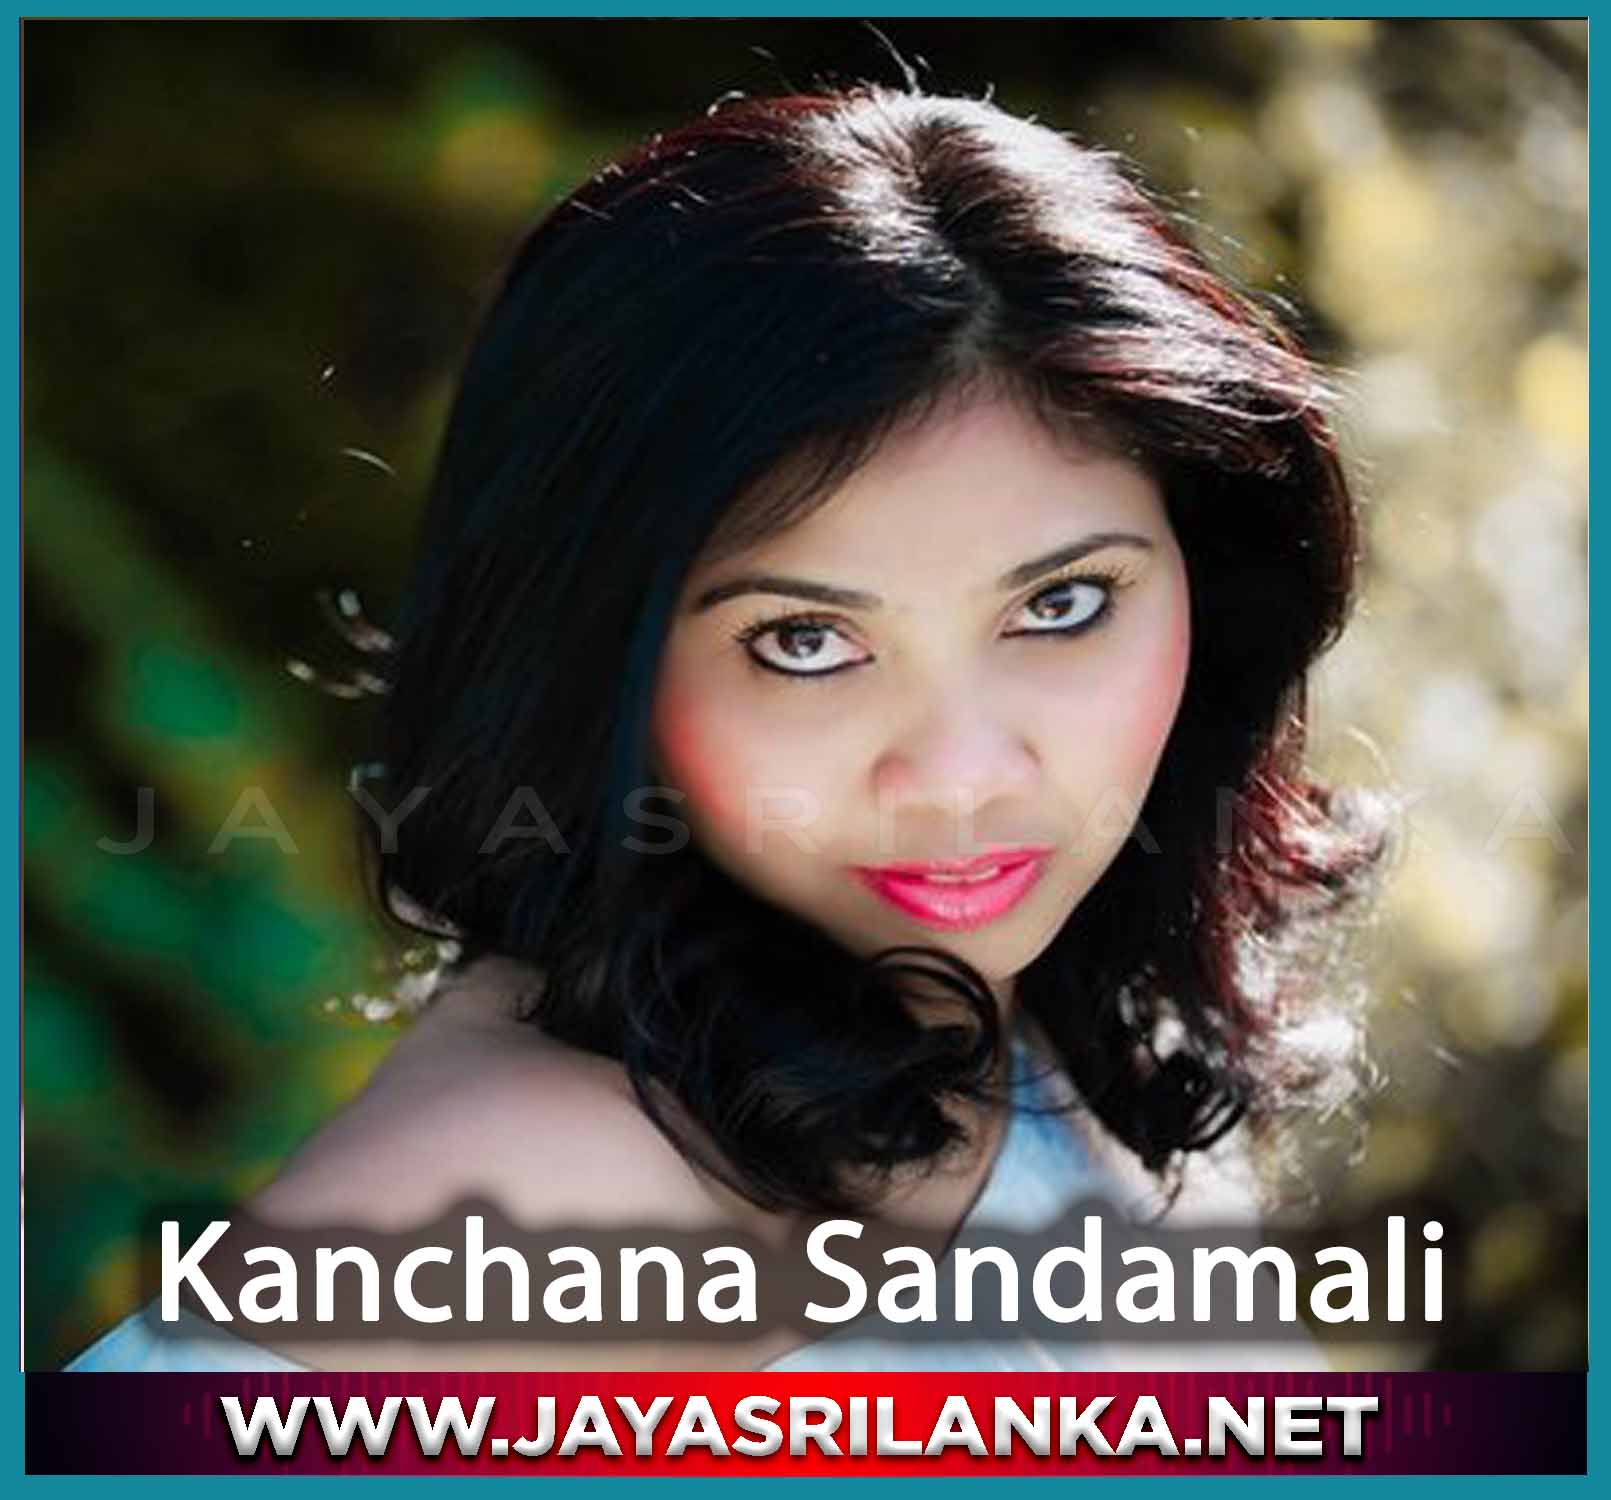 Sumudu Saman Wele (Dile Dile Dile) - Kanchana Sandamali mp3 Image